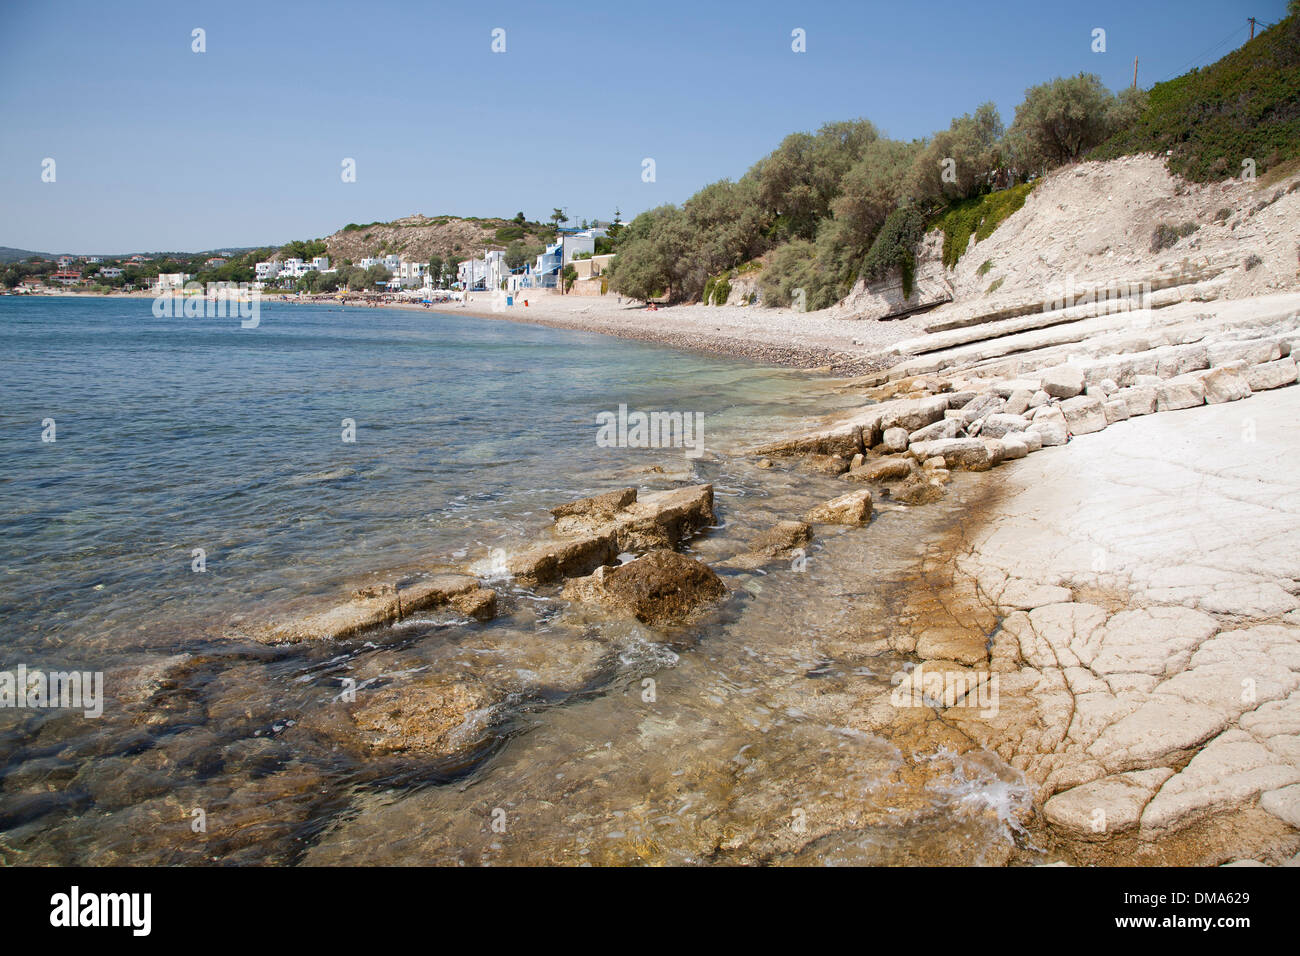 agia fotia, agia fotini beach, island of chios, north east aegean sea, greece, europe Stock Photo